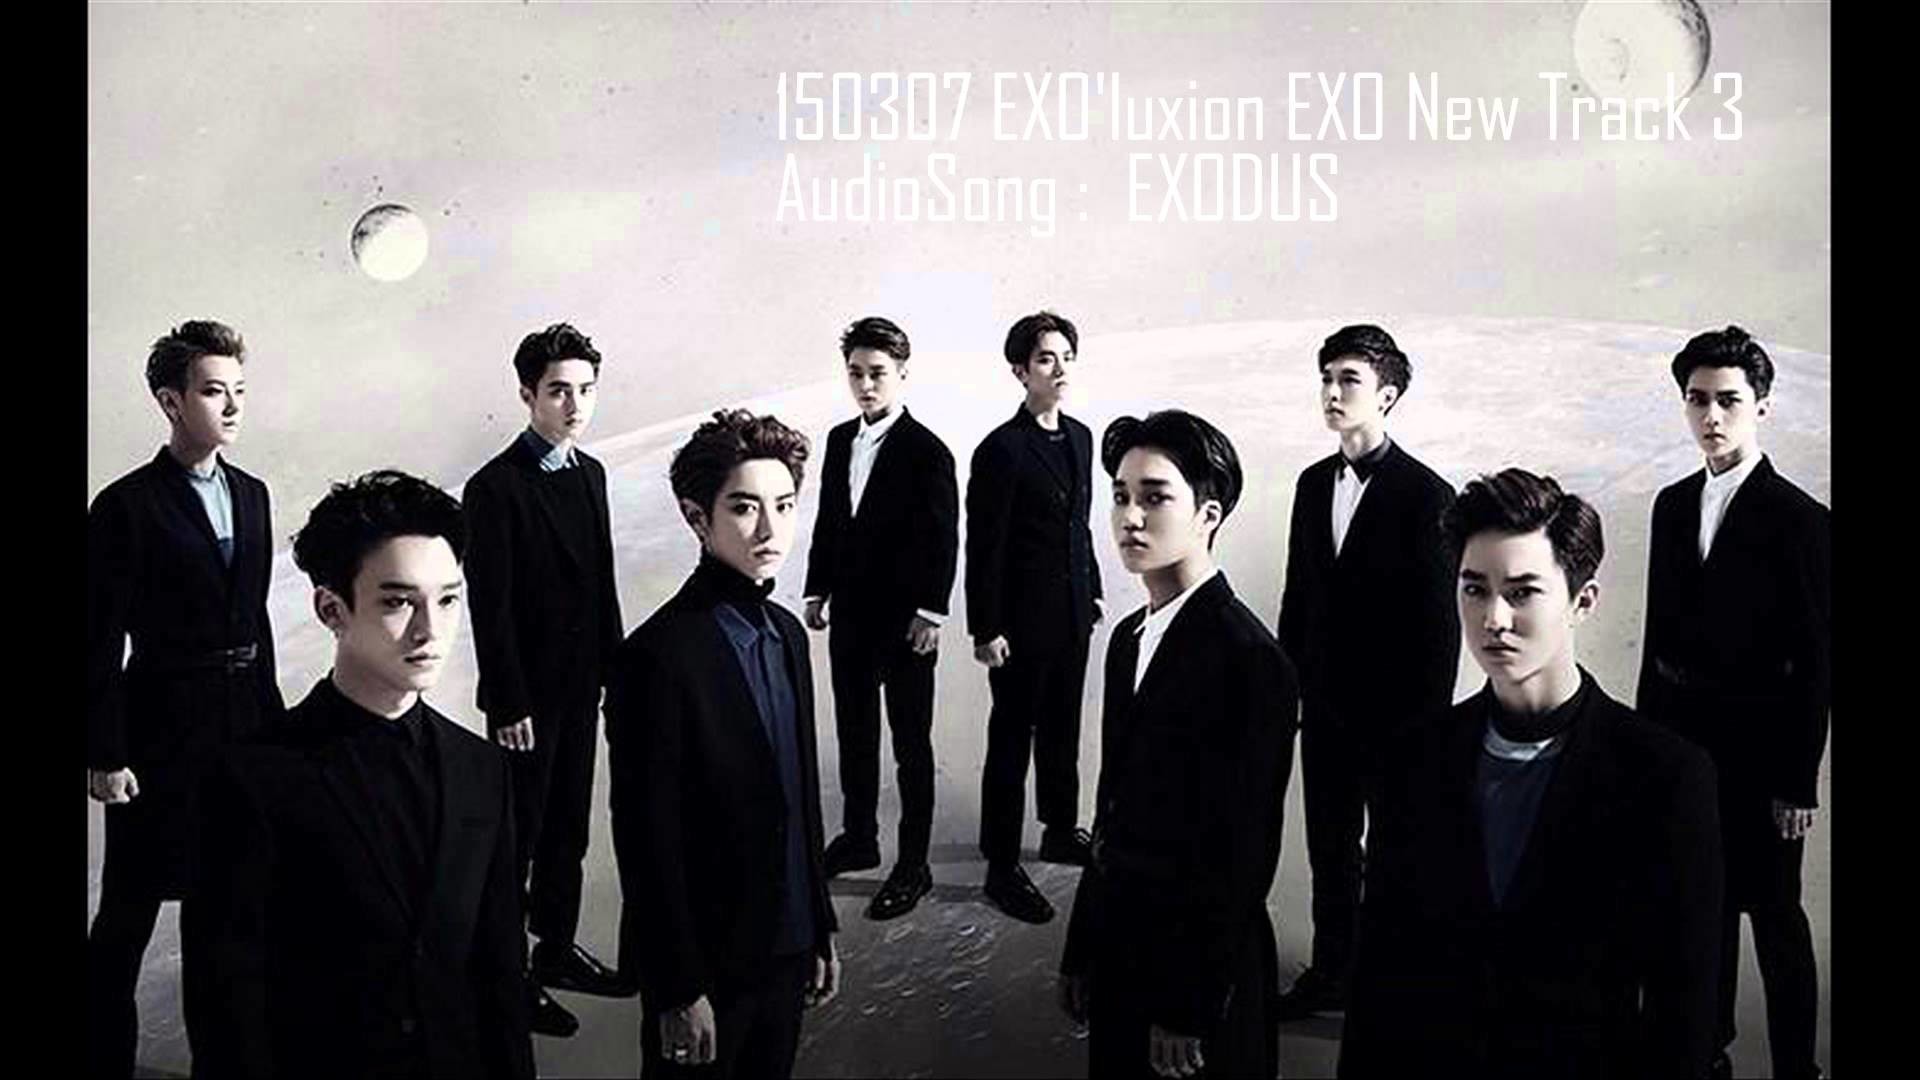 [Audio]150307 #EXO'luXion new track3 – exodus